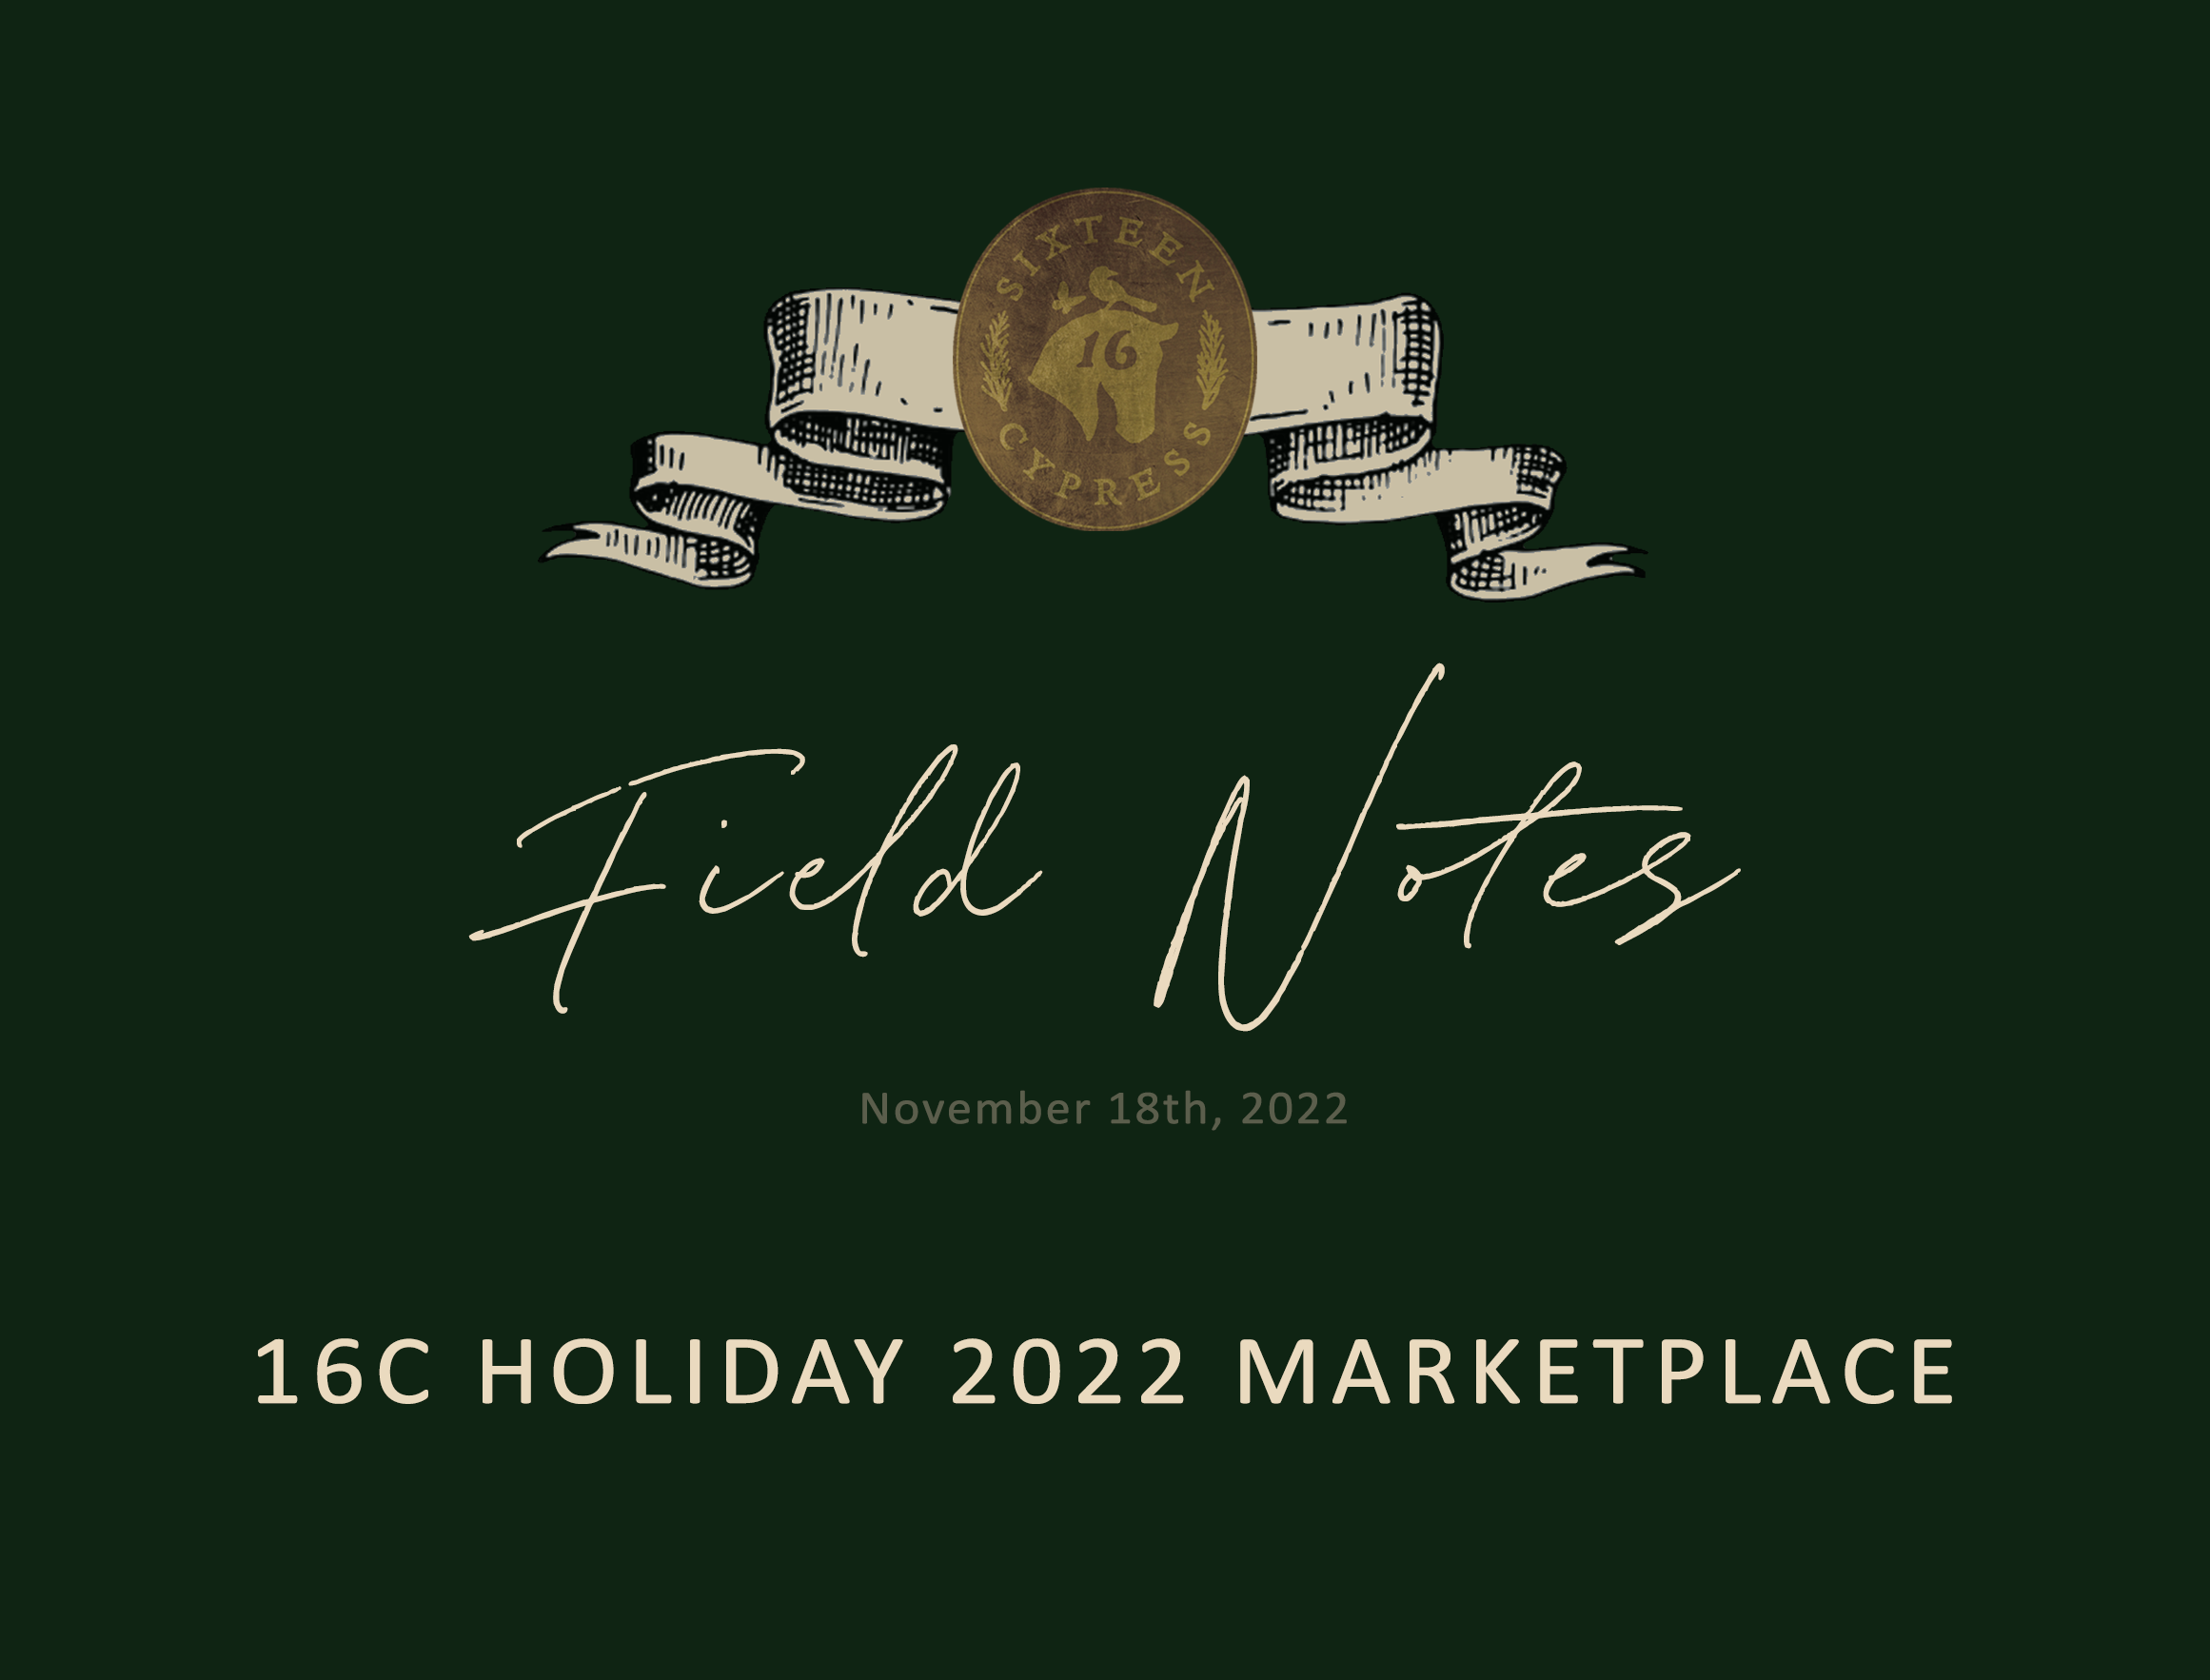 16C Holiday 2022 Marketplace